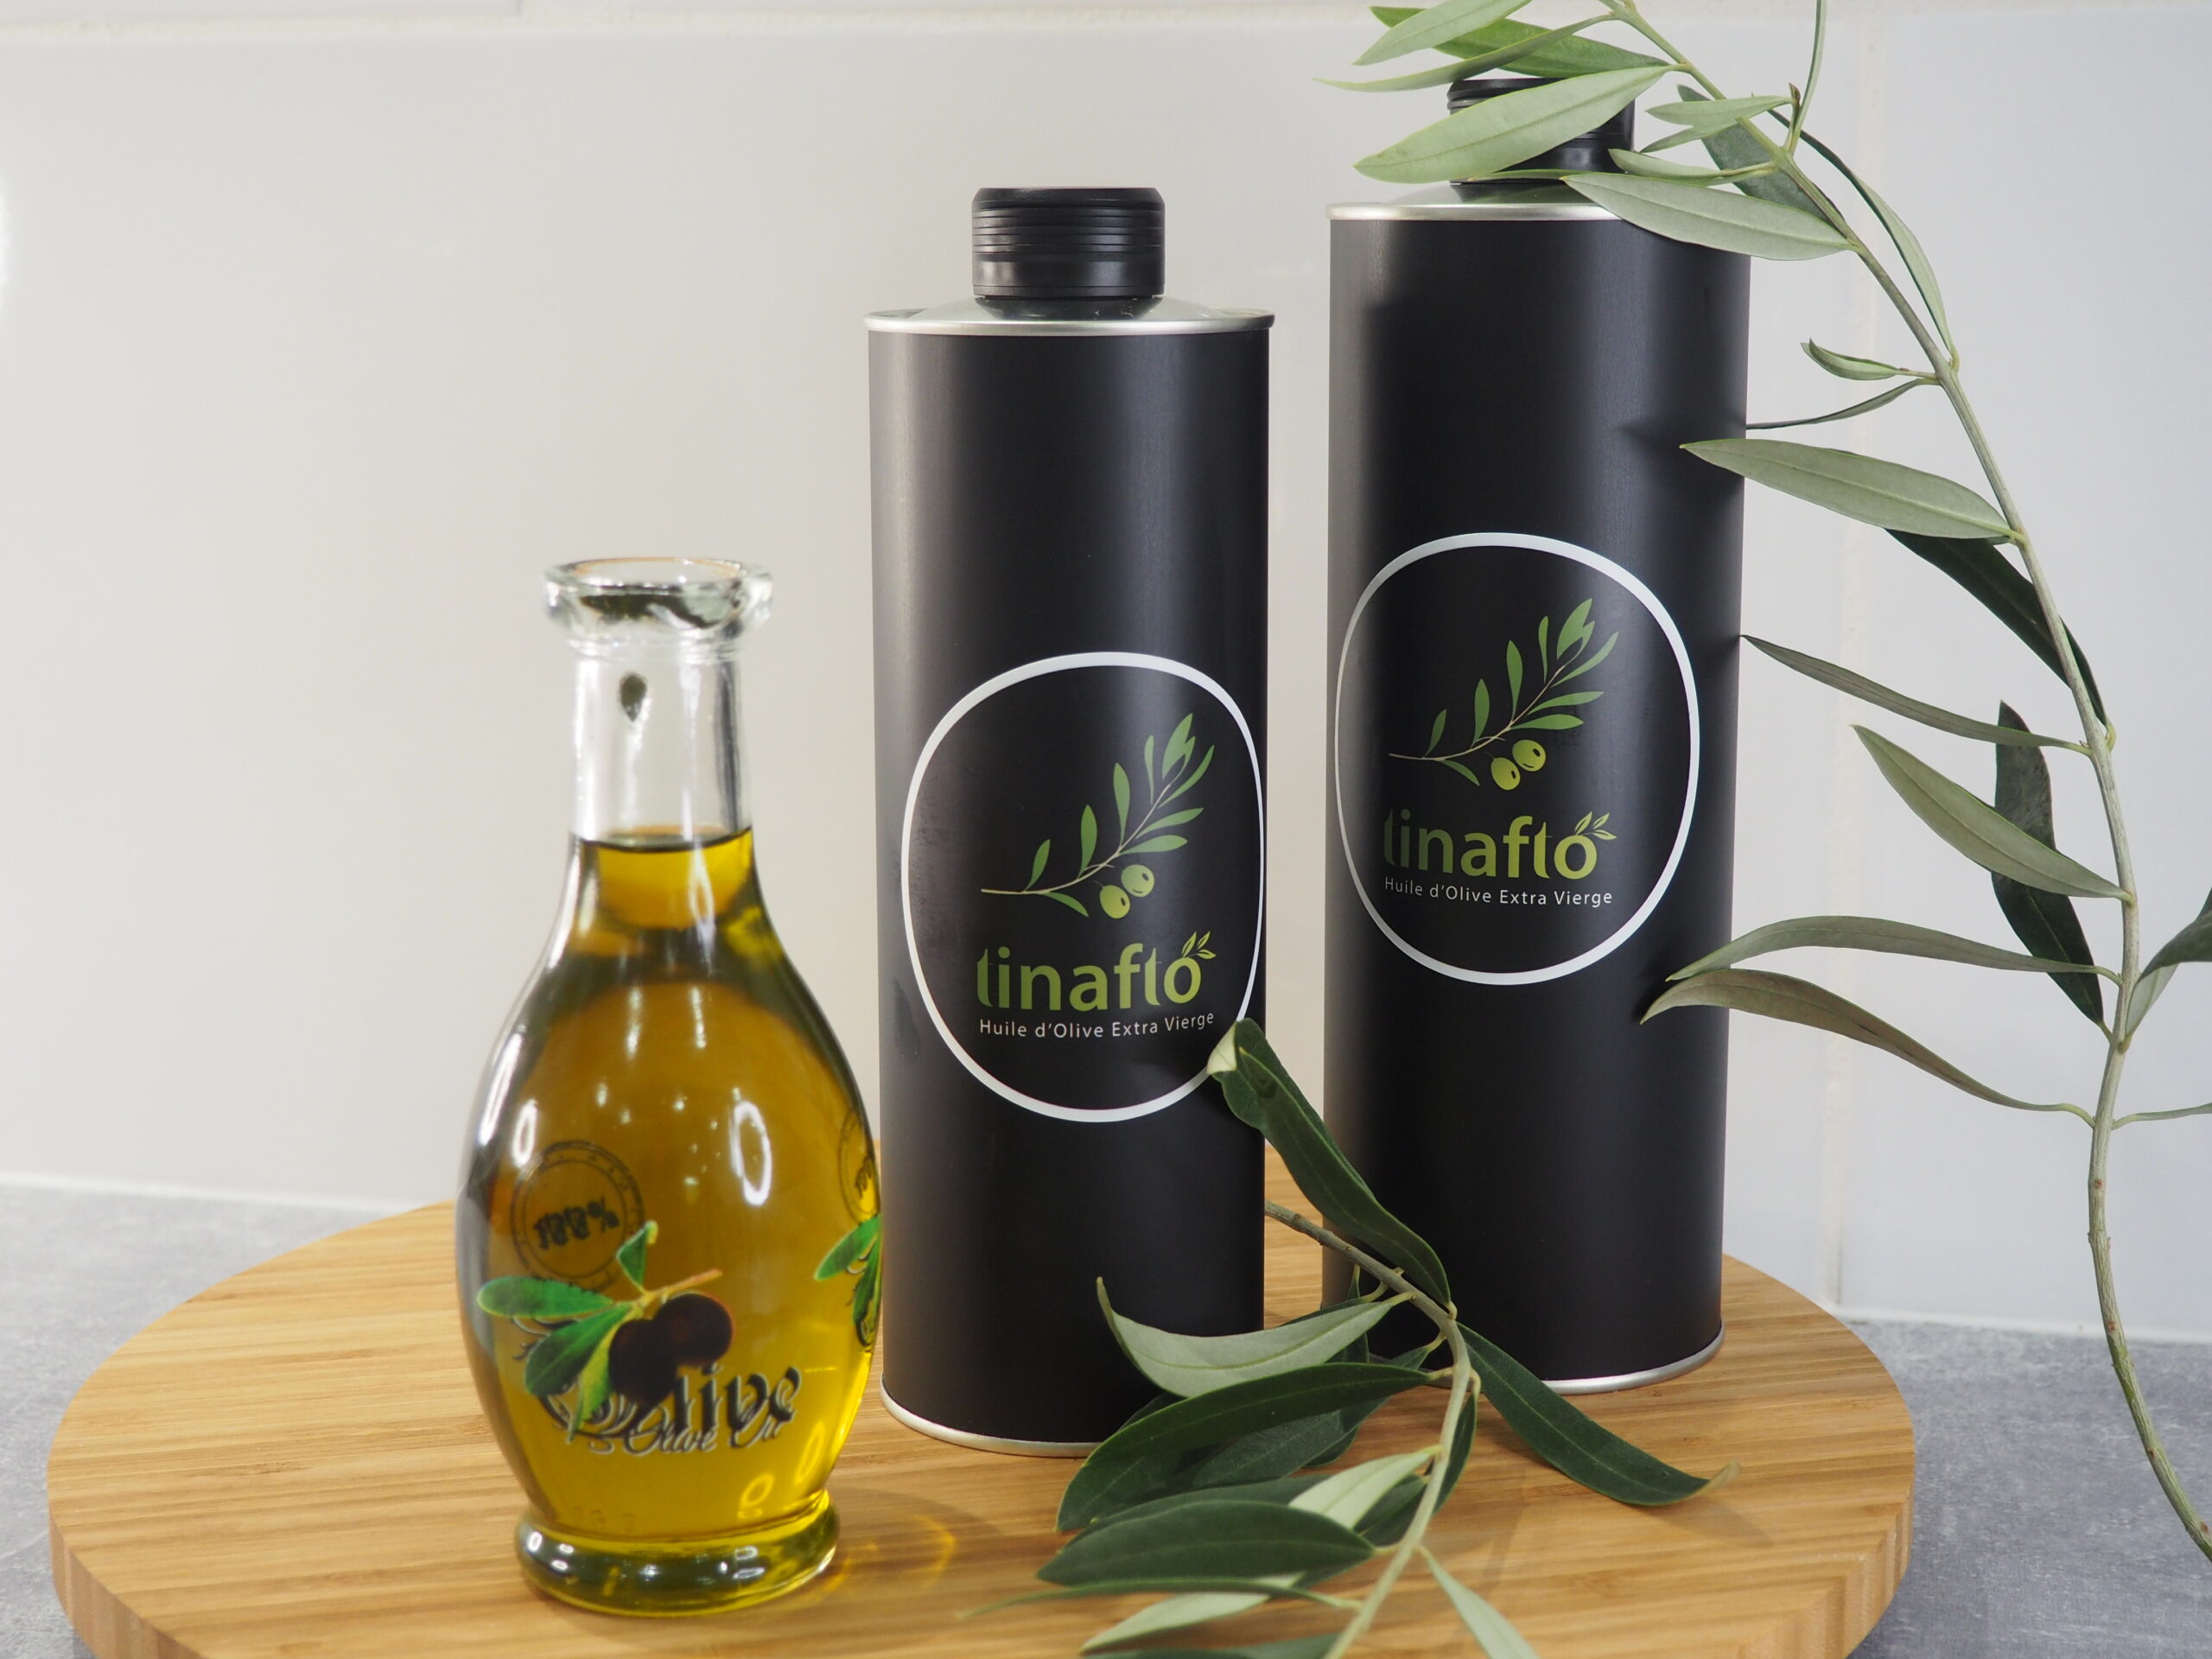 Huile d'olive vierge Ithri - Bouteille en plastique - 500ml